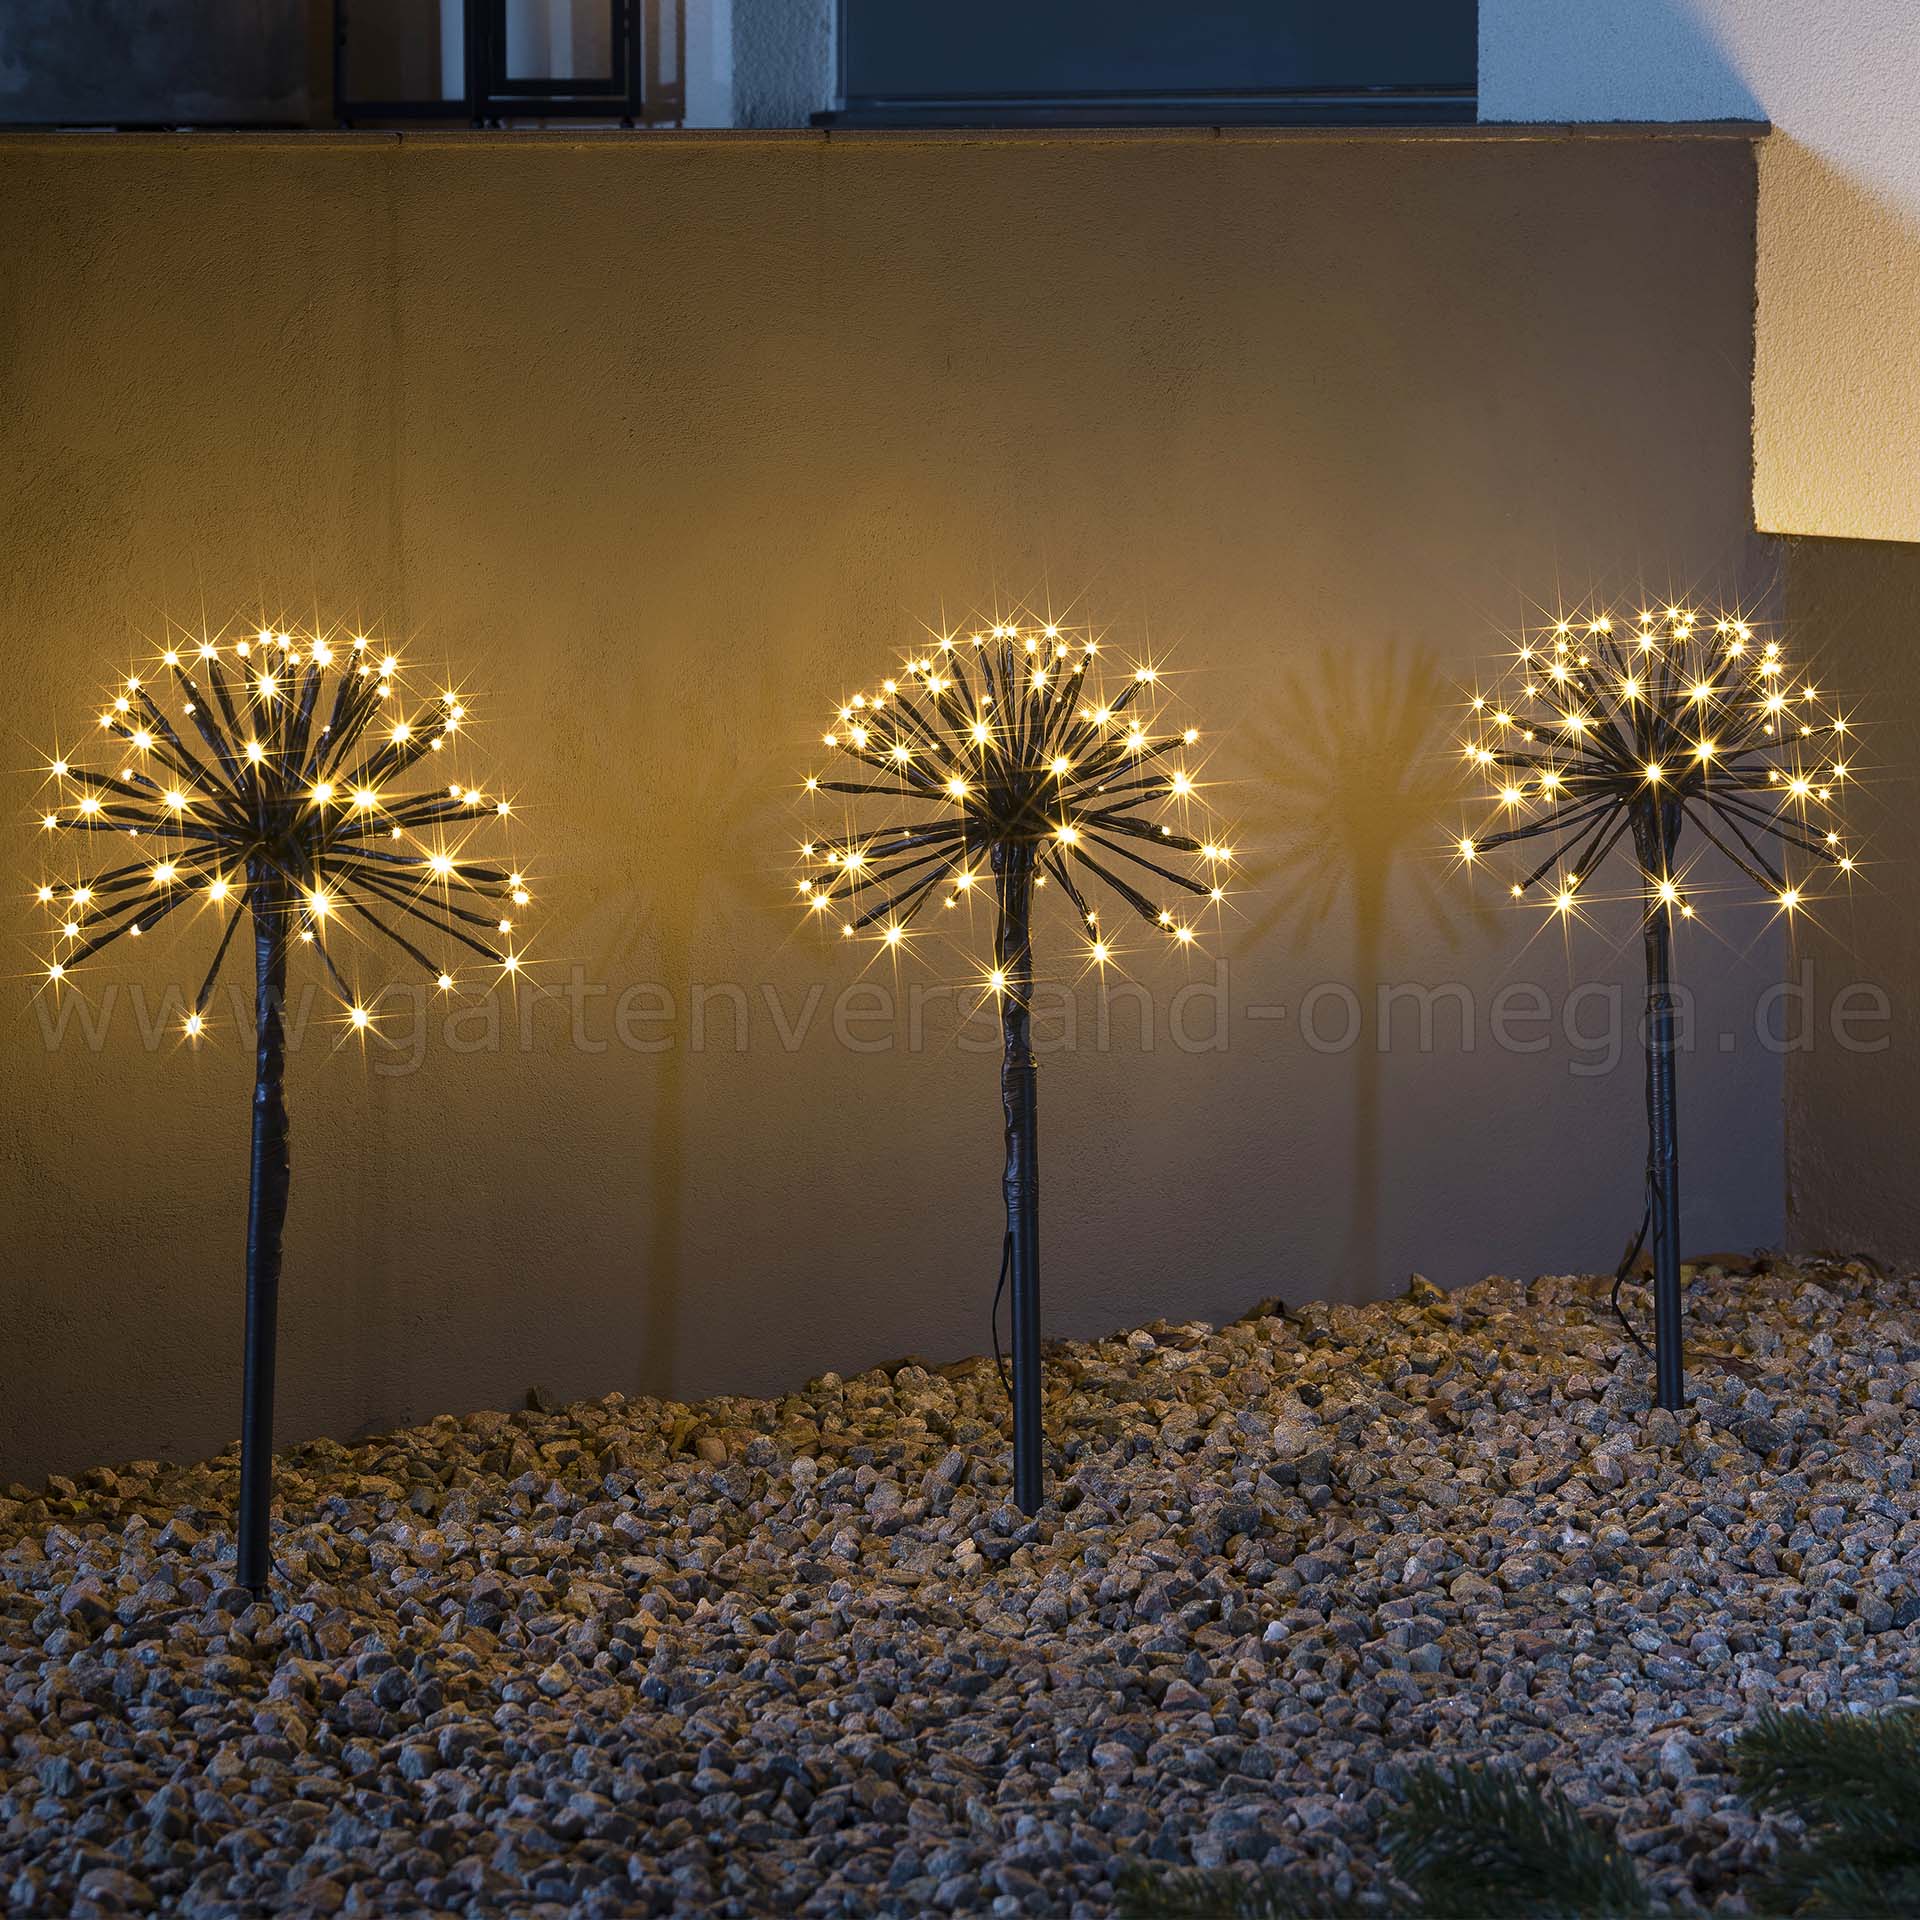 LED-Spießleuchte mit 3 Pusteblumen - Weihnachtsdeko Weihnachtsbeleuchtung Garten, Pusteblume, den Leuchtstäbe, LED-Pusteblume, Omega Weihnachtsaußenbeleuchtung, Gartenversand LED-Lichtstab, Garten beleuchtete Gartendekoration, Ganzjahresdekoration, | für